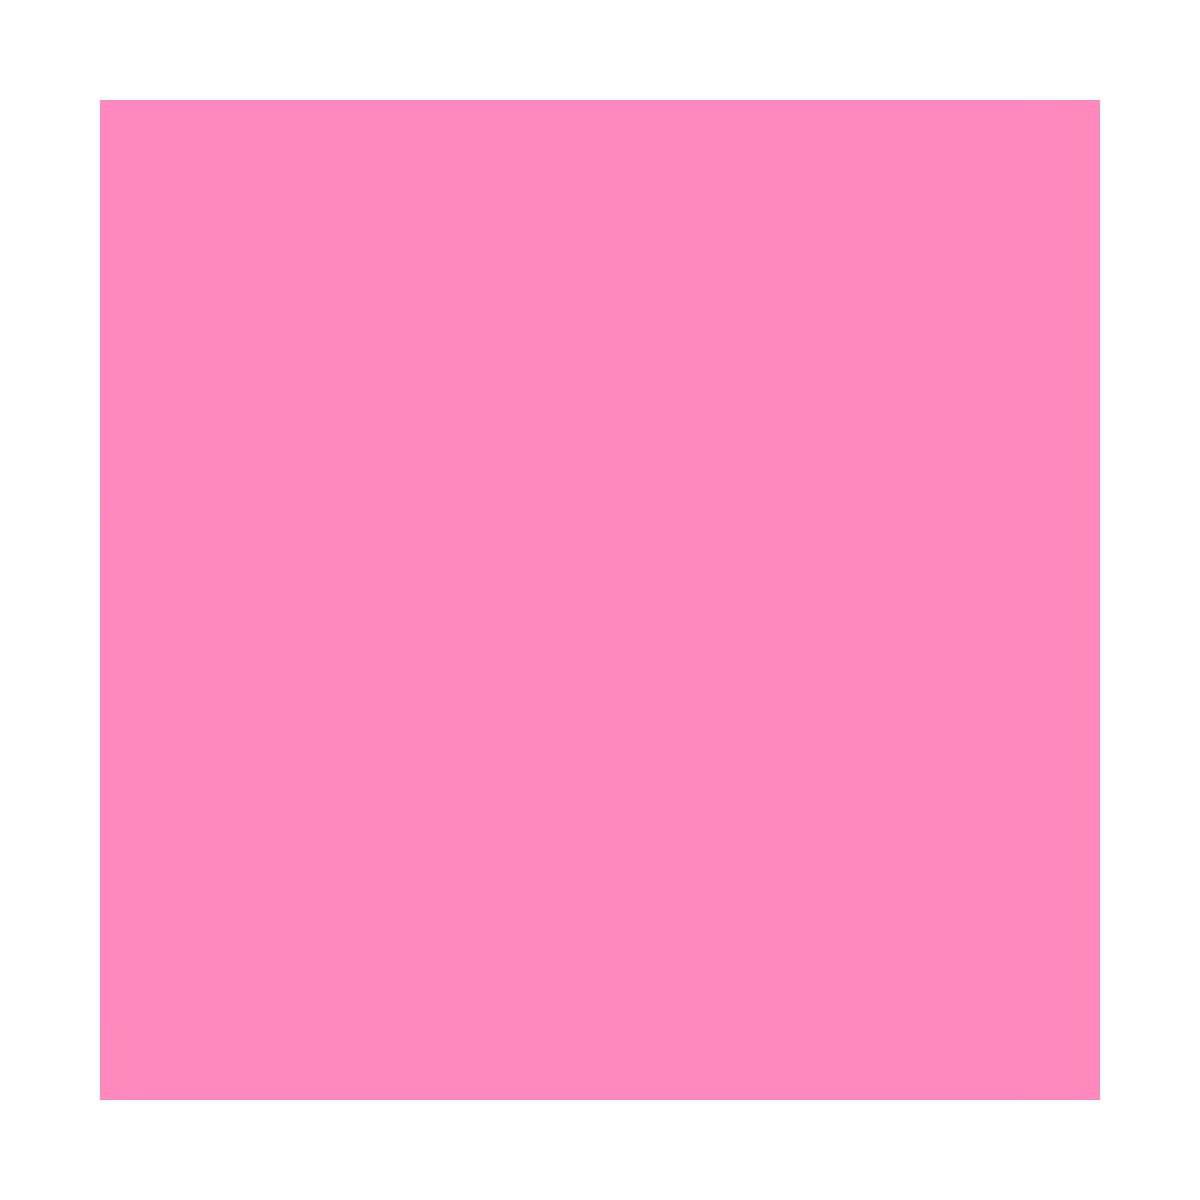 Lee Filters Dark Pink 24x21 Gel Filter Sheet 